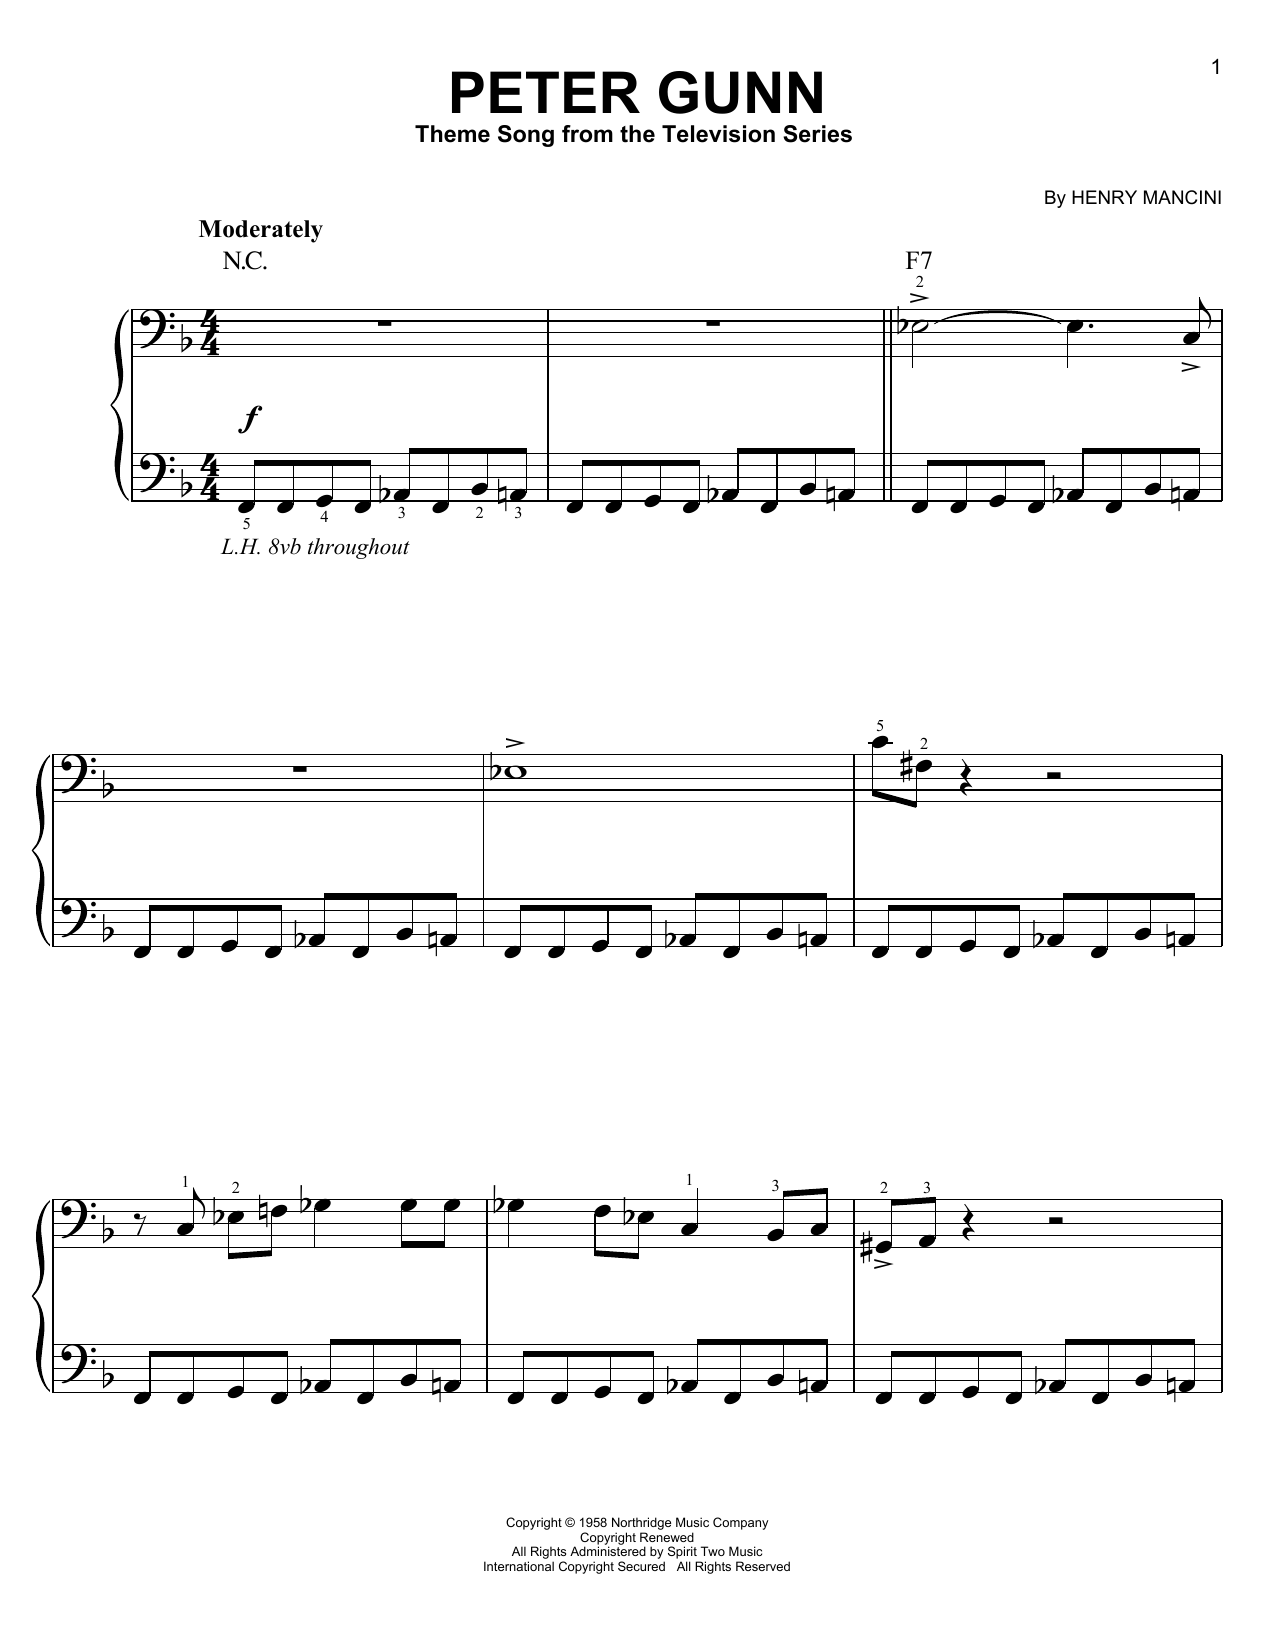 Peter Gunn Theme sheet music